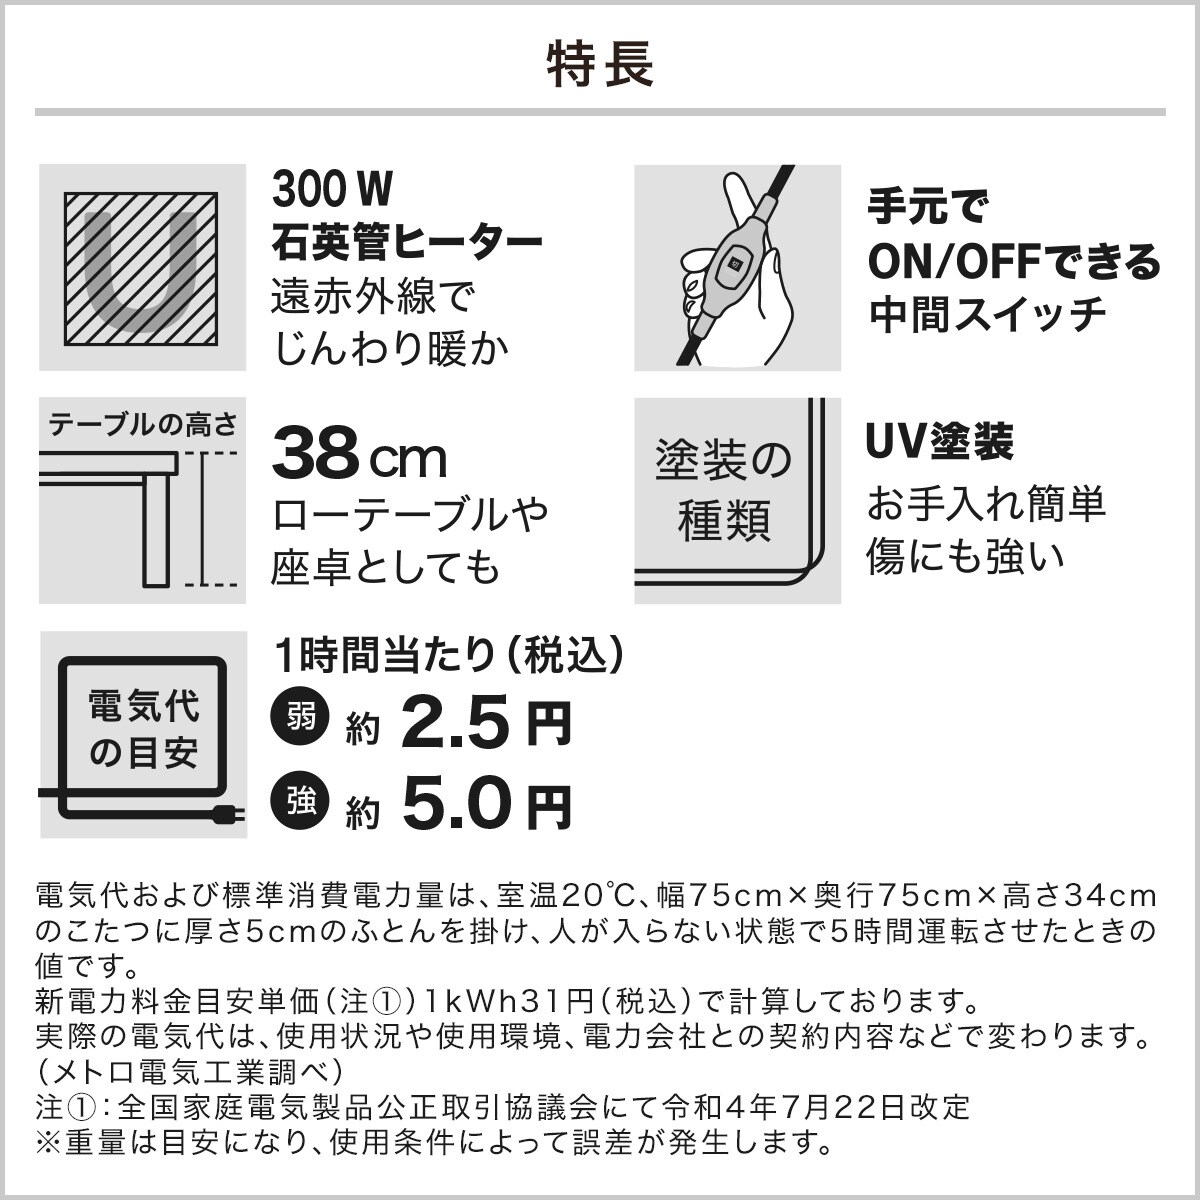 豆型リビングこたつ(GC22 9060)通販 ニトリネット【公式】 家具・インテリア通販